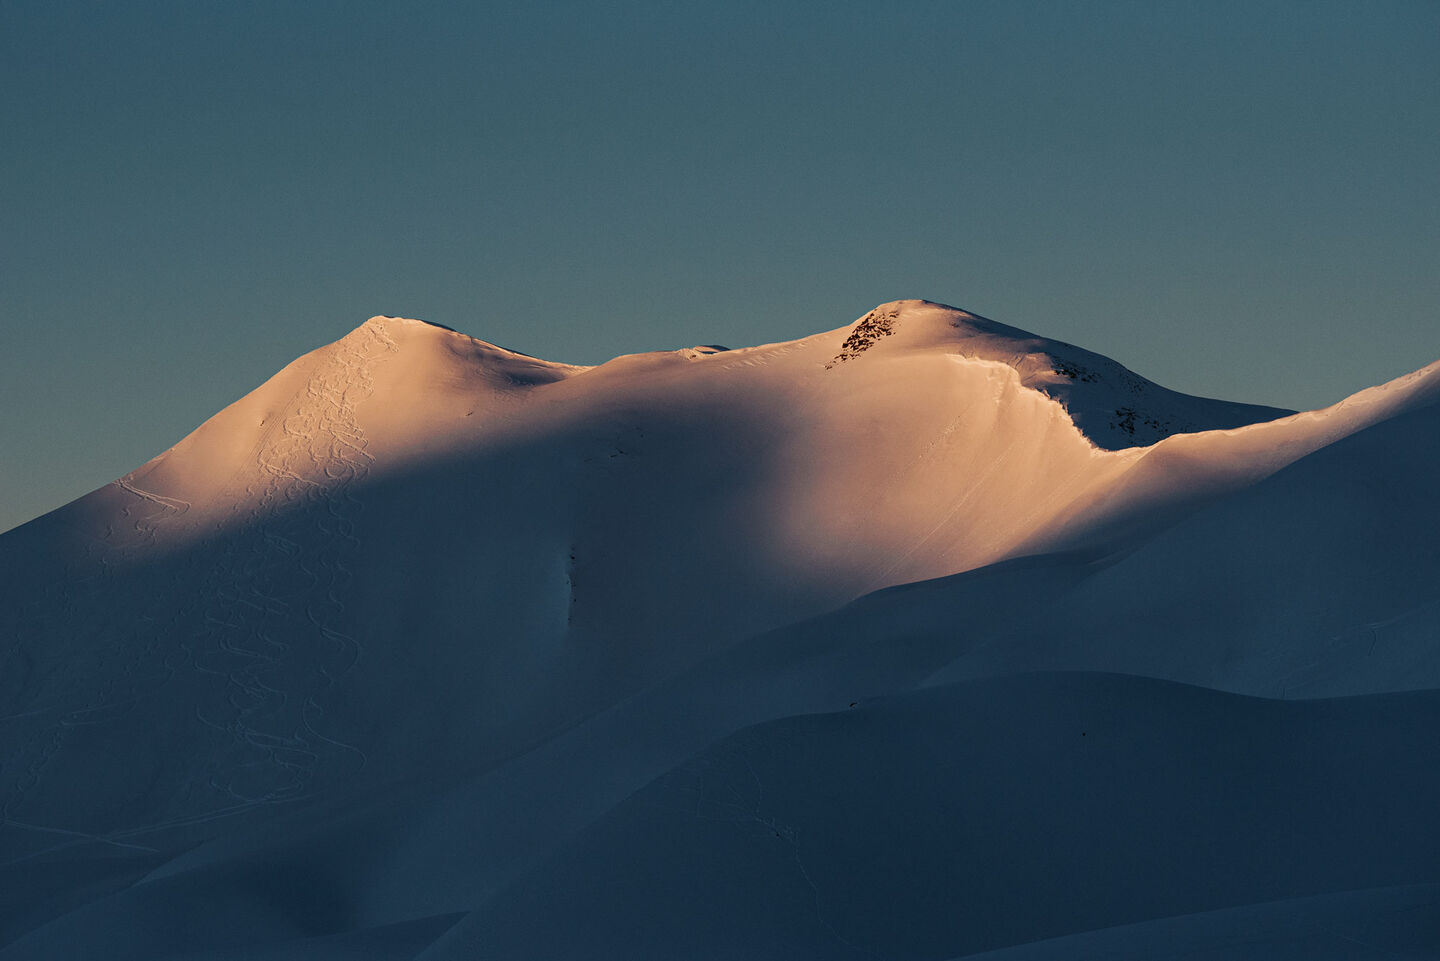 Mountain peaks with ski tracks through freshly fallen snow